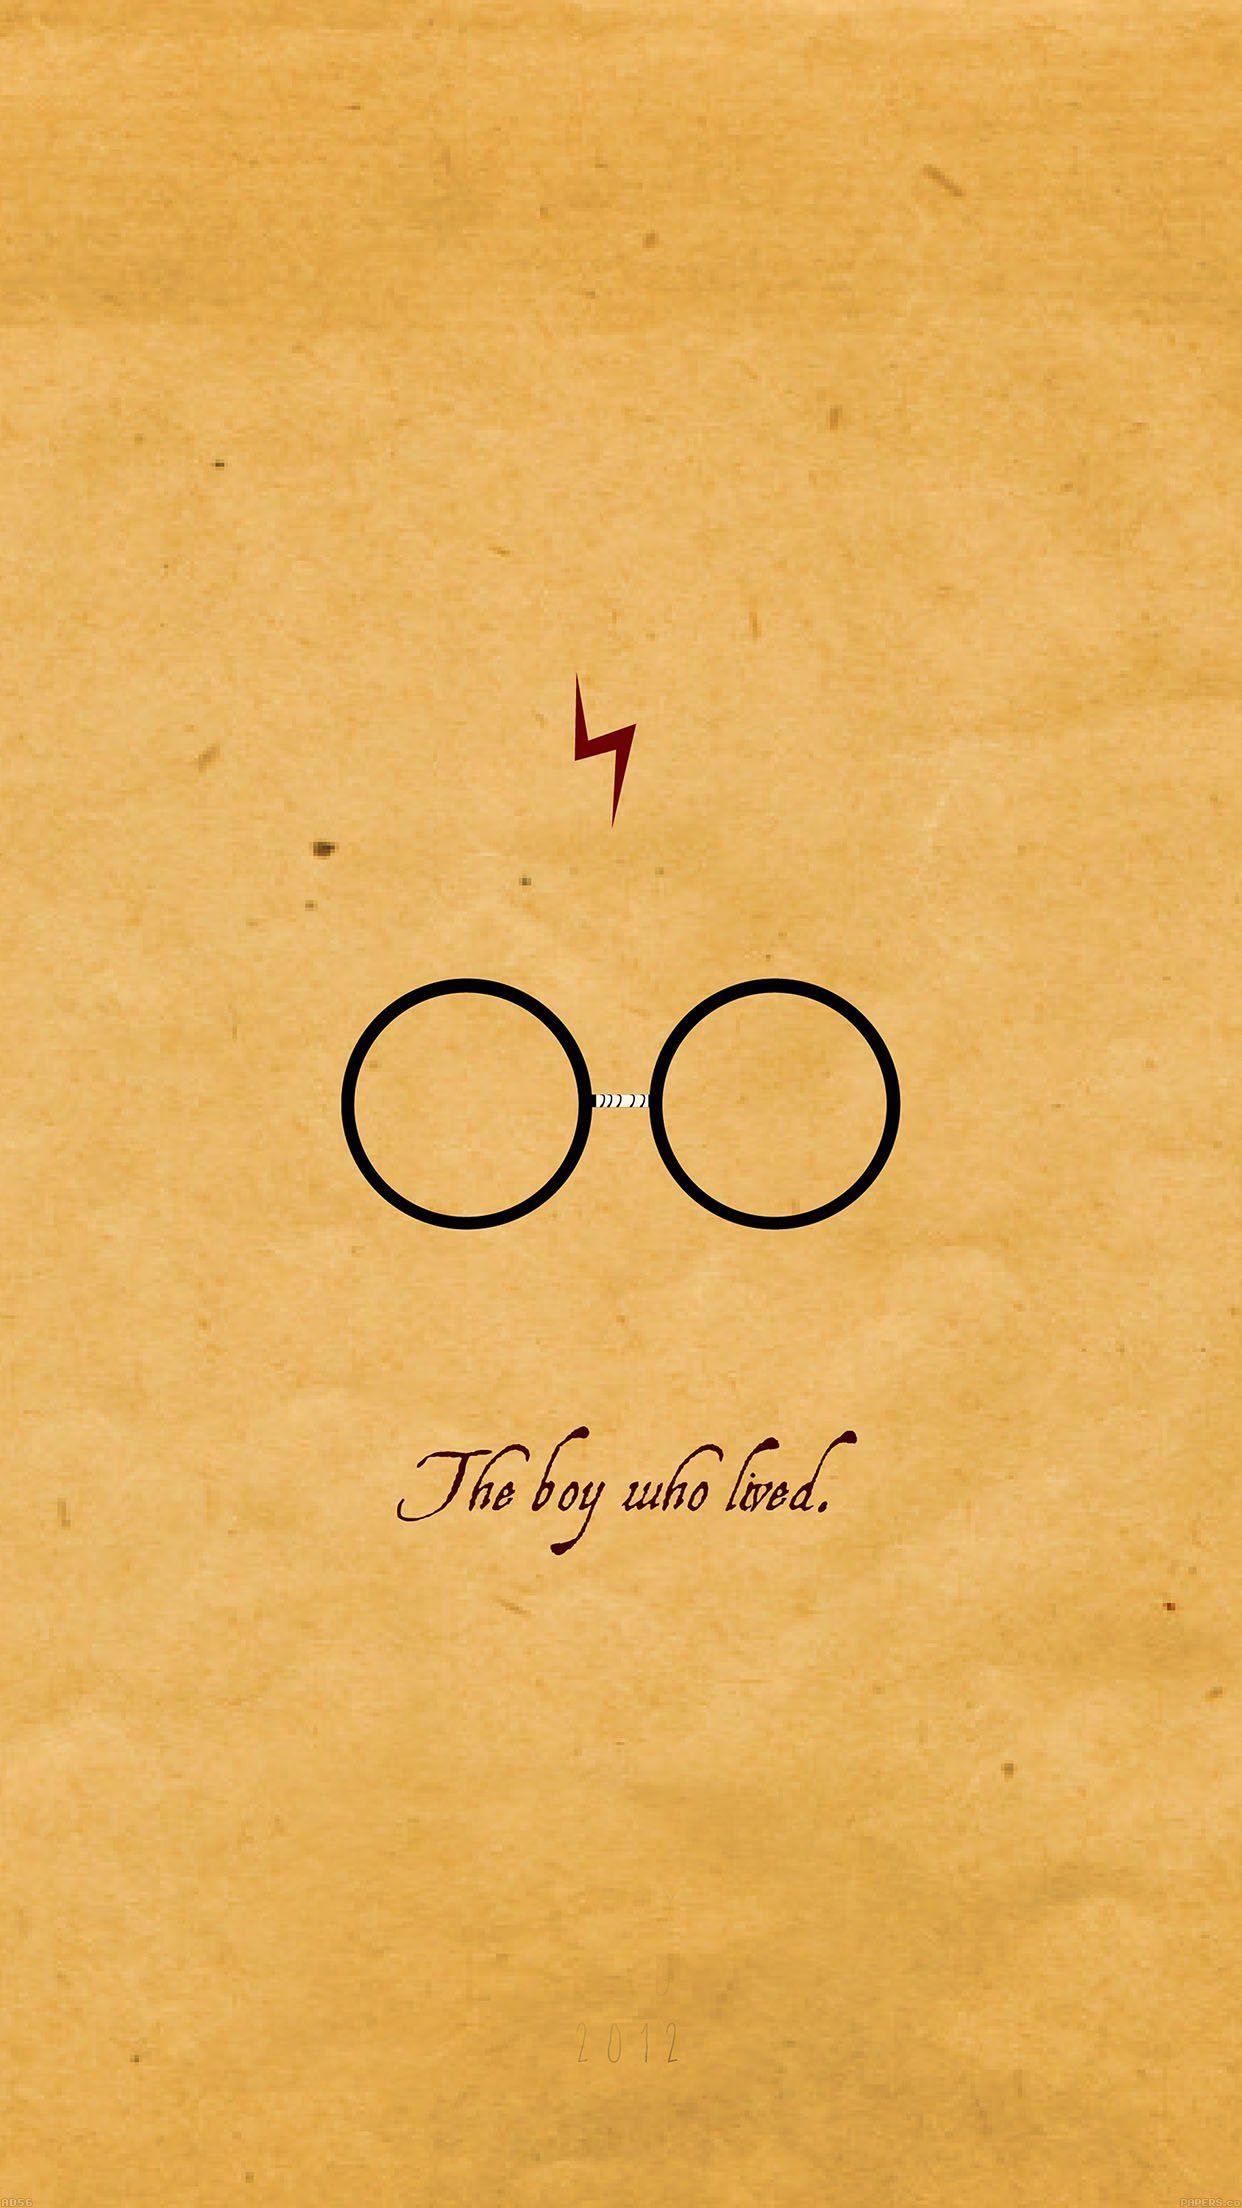 Harry Potter iPad Wallpaper Free Harry Potter iPad